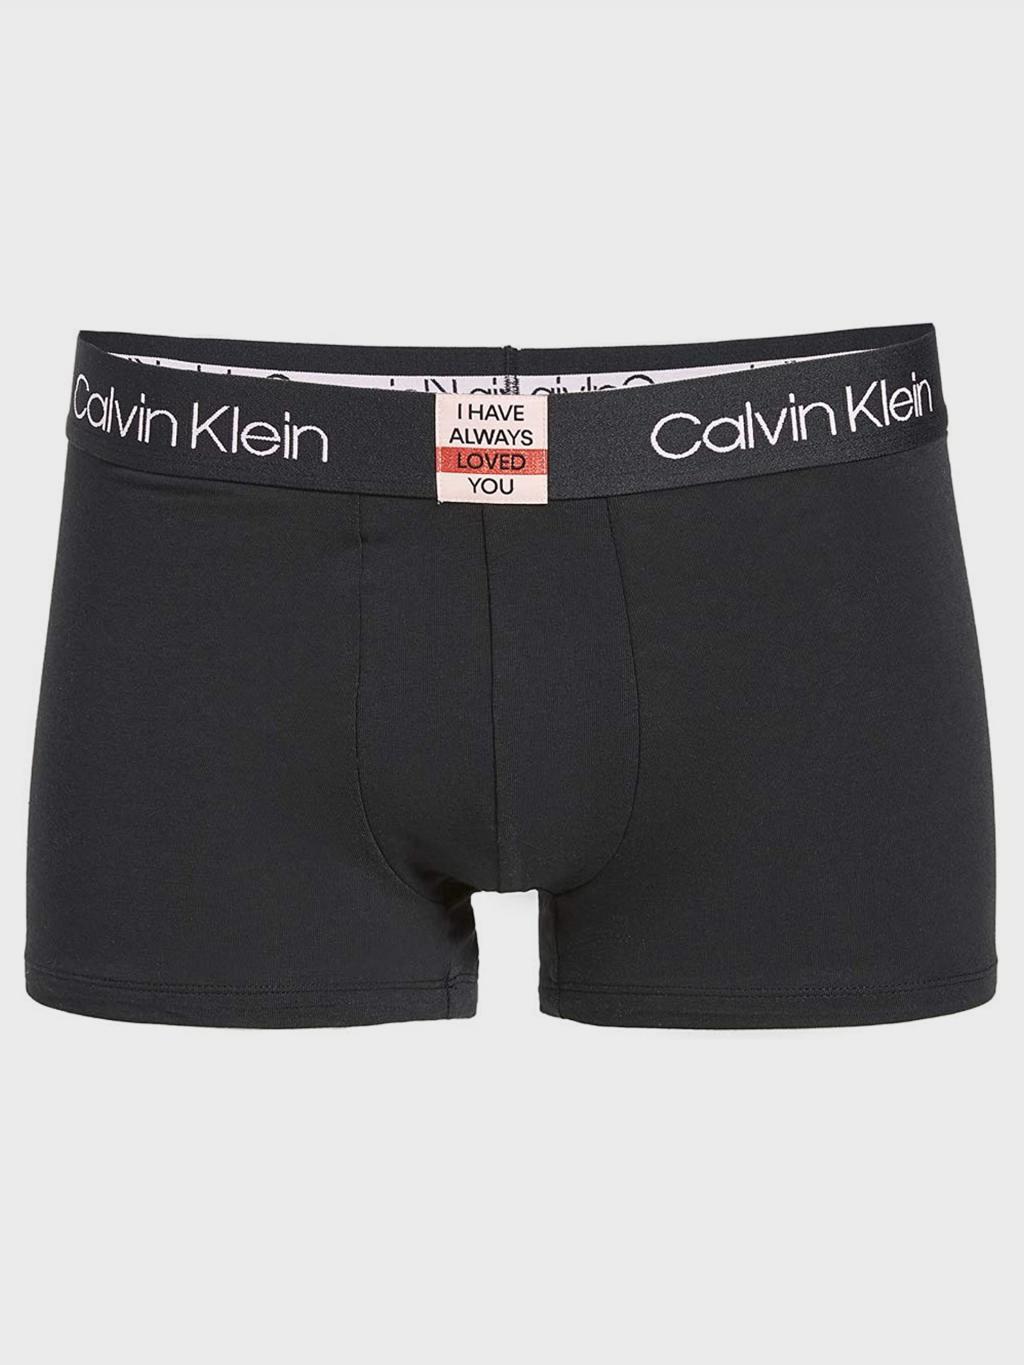 NB2067 - pánské boxerky Calvin Klein